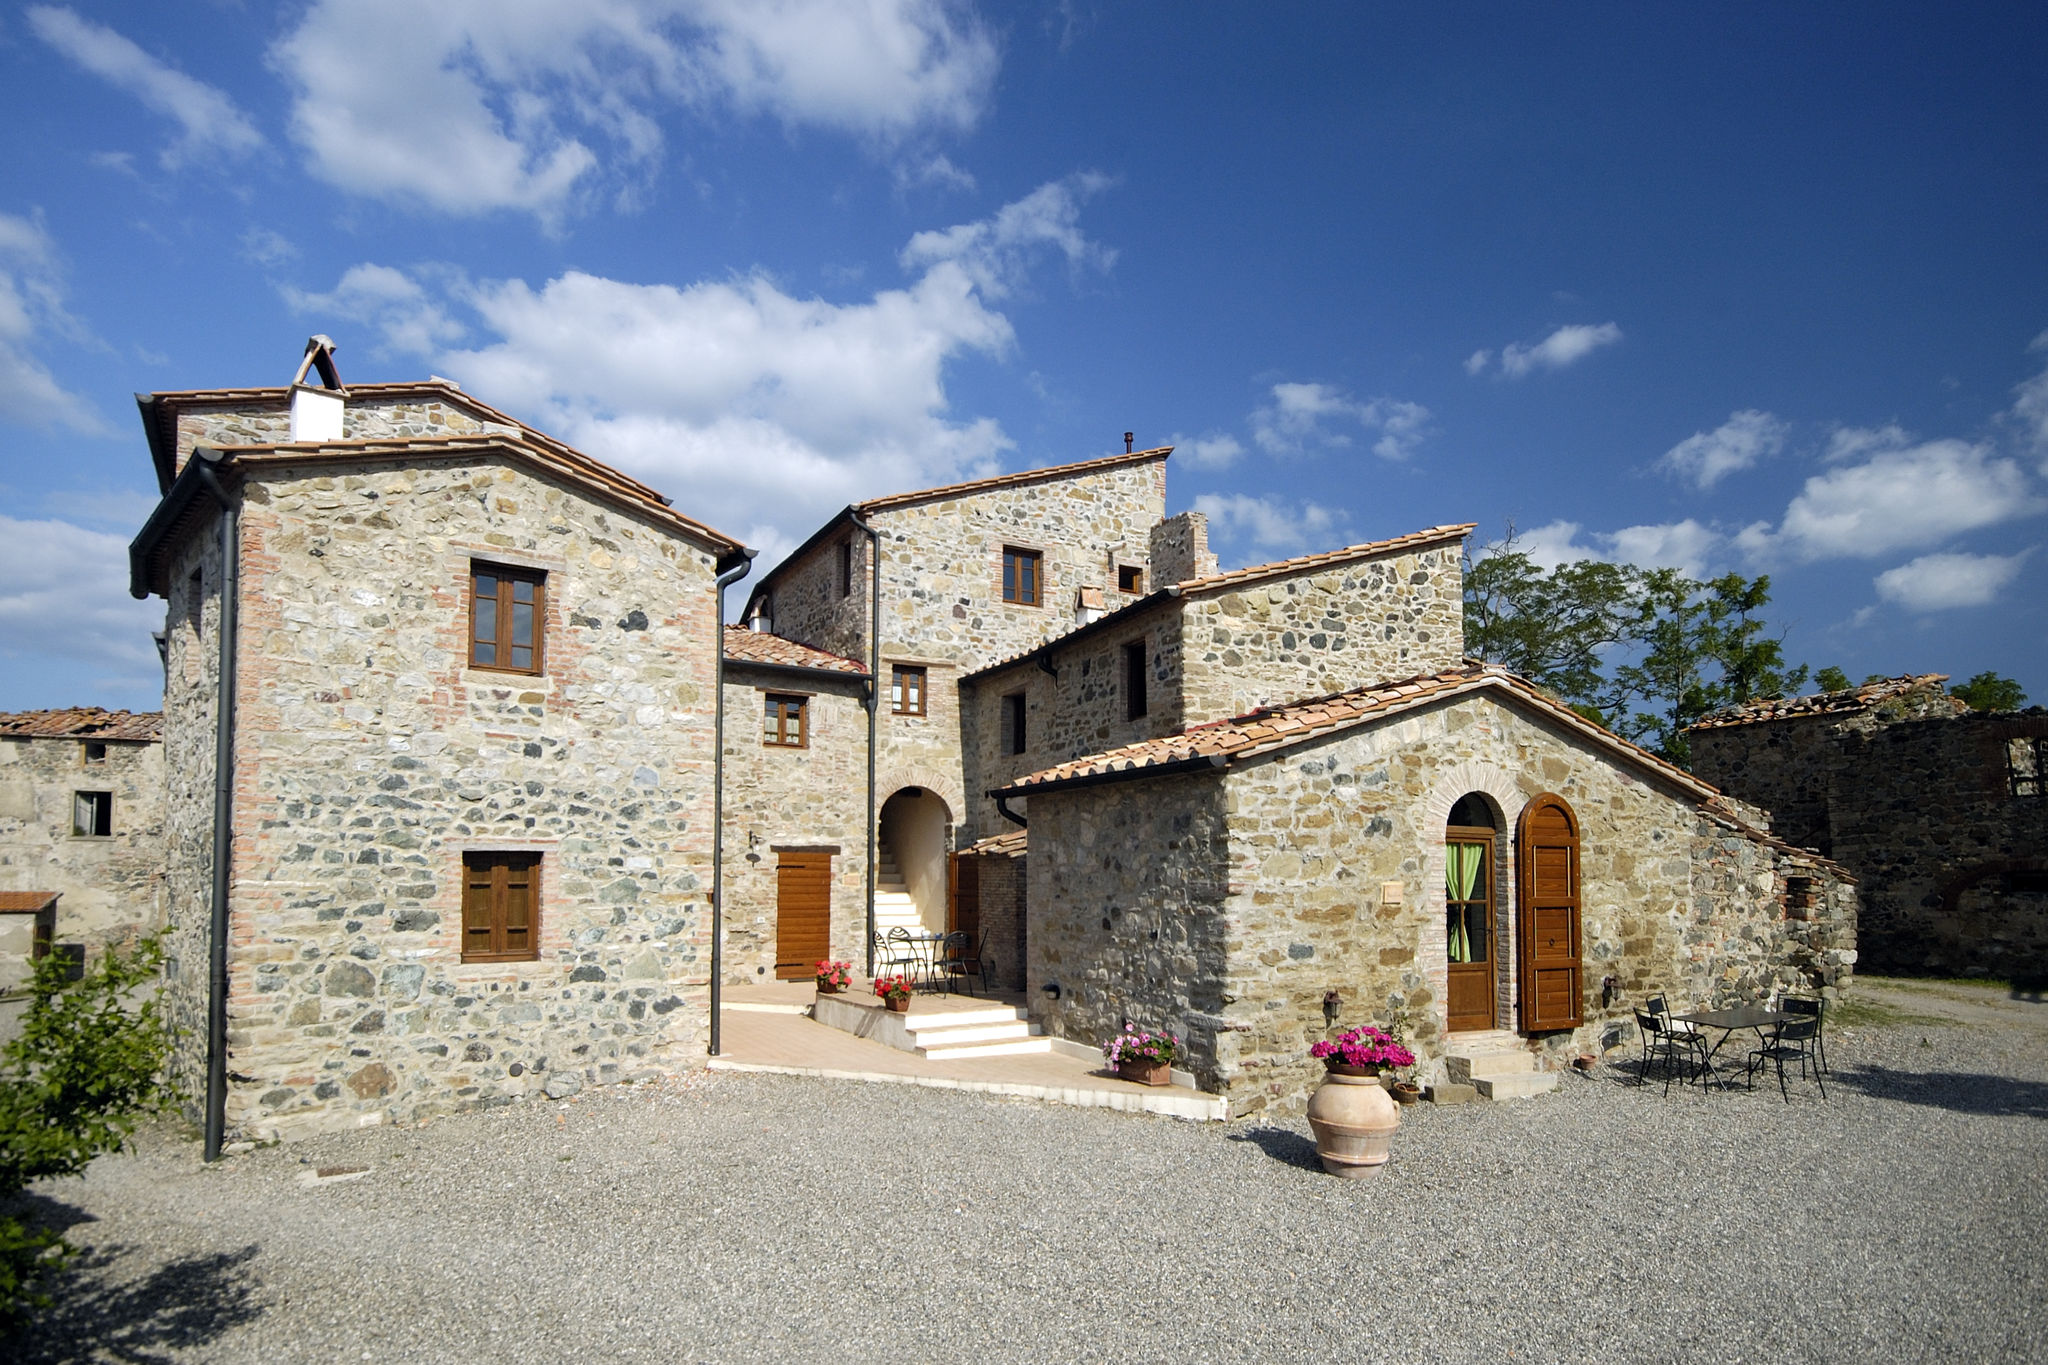 Boerderij-appartement in een middeleeuws dorpje in de Toscaanse heuvels